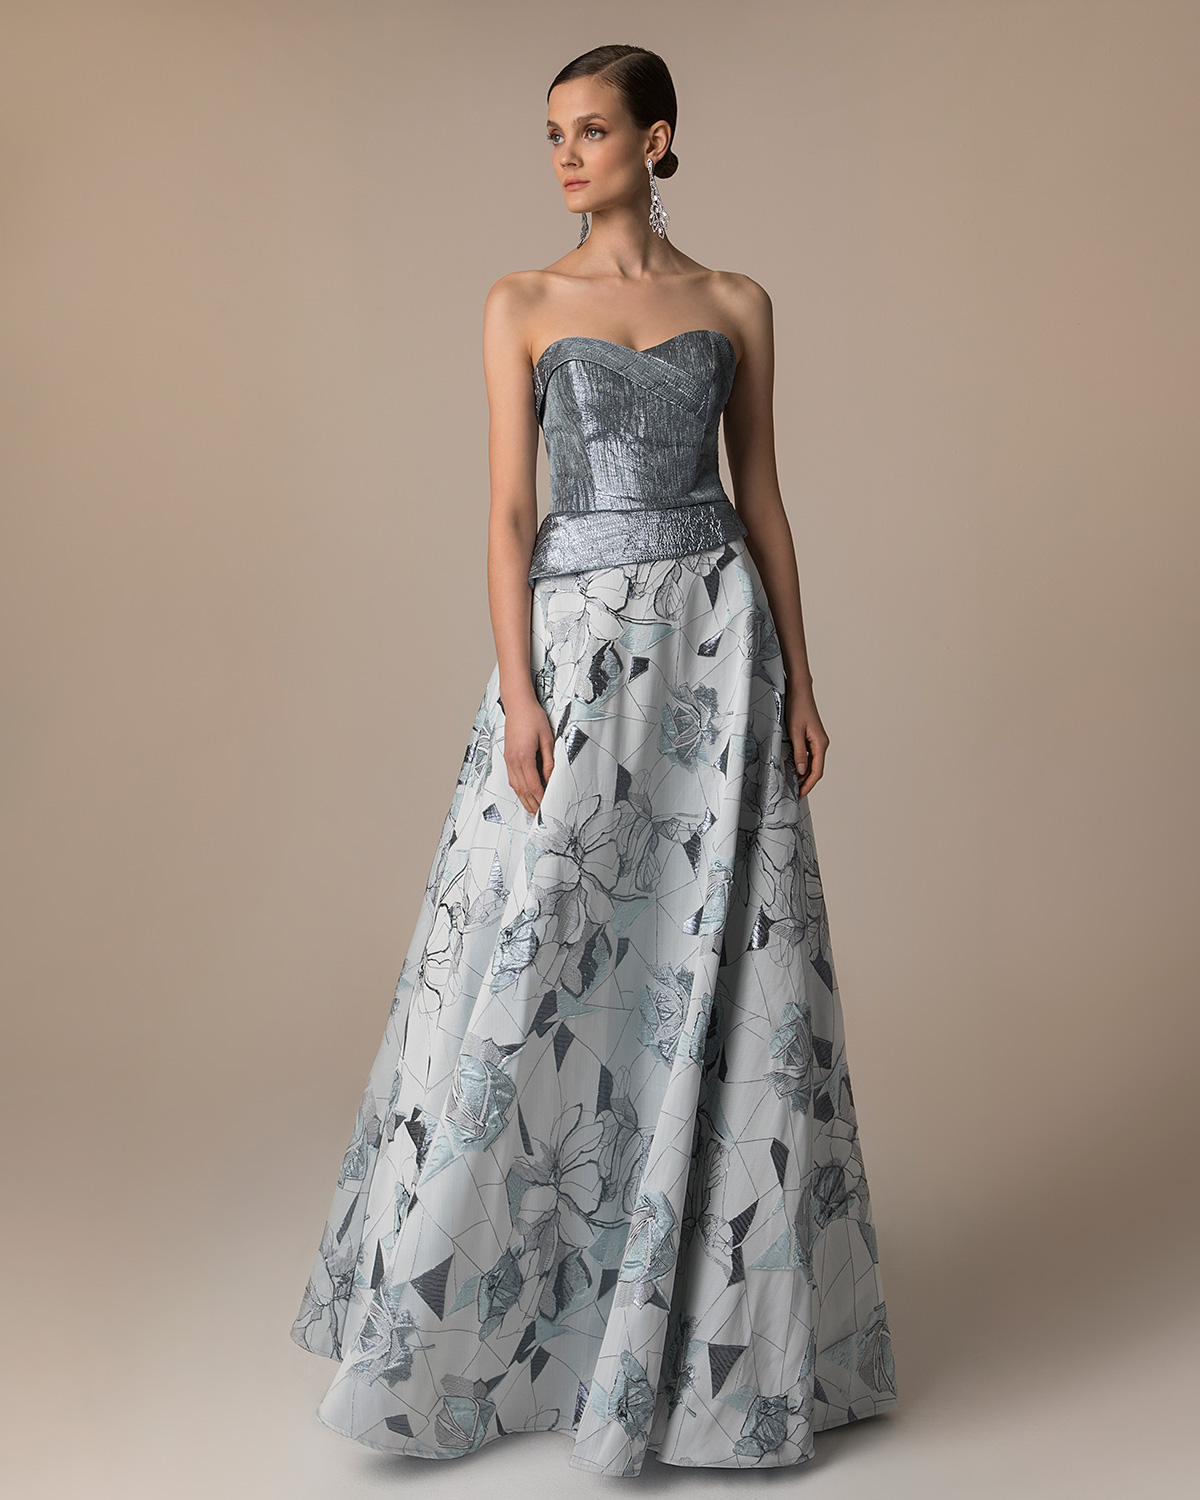 Вечерние платья / Long evening printed brocade dress with solid color shining top